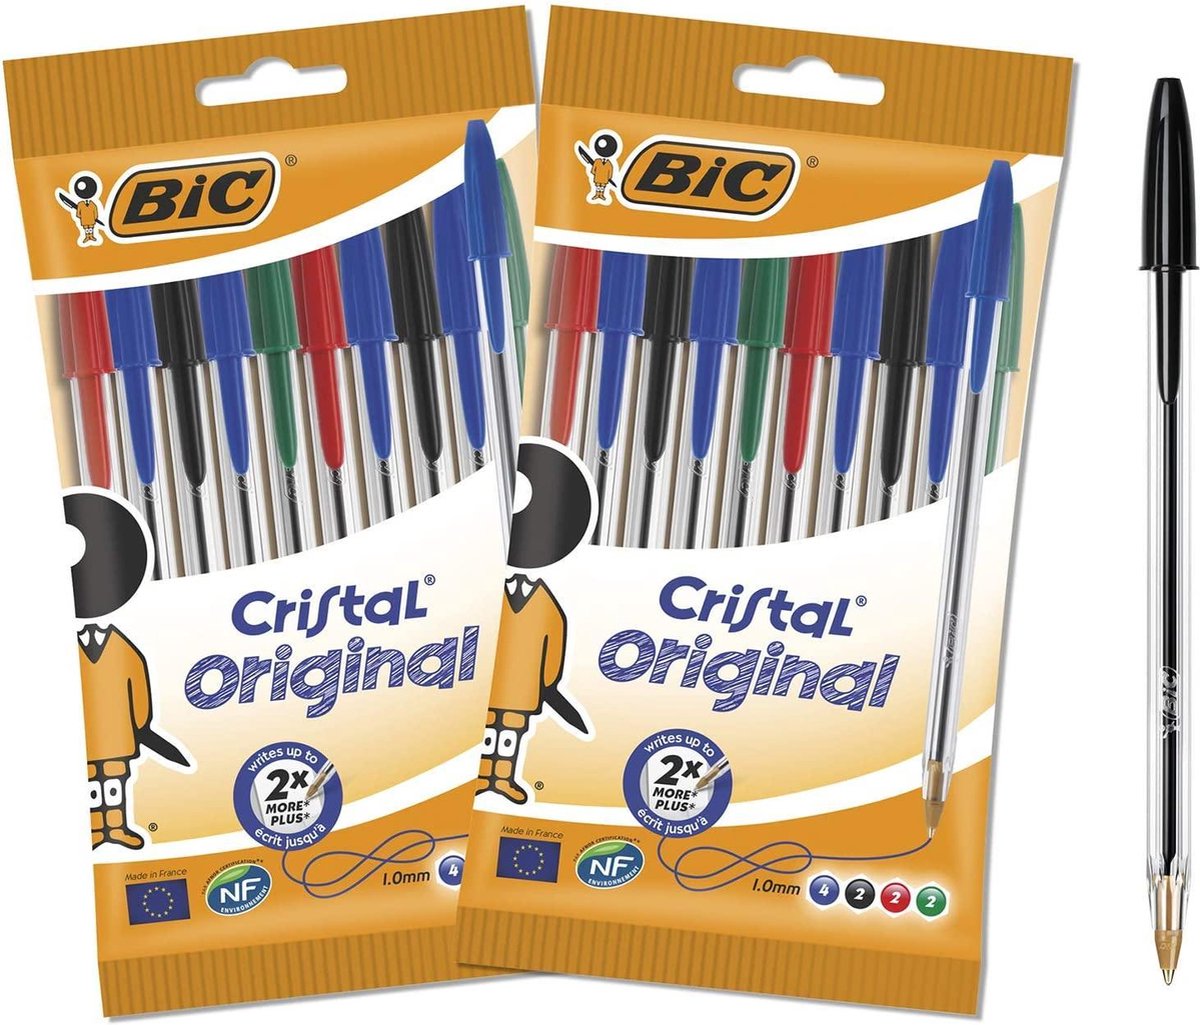 BIC Cristal Original balpen - medium punt (1.0 mm) - bundel van 2 zakjes - 20 stuks